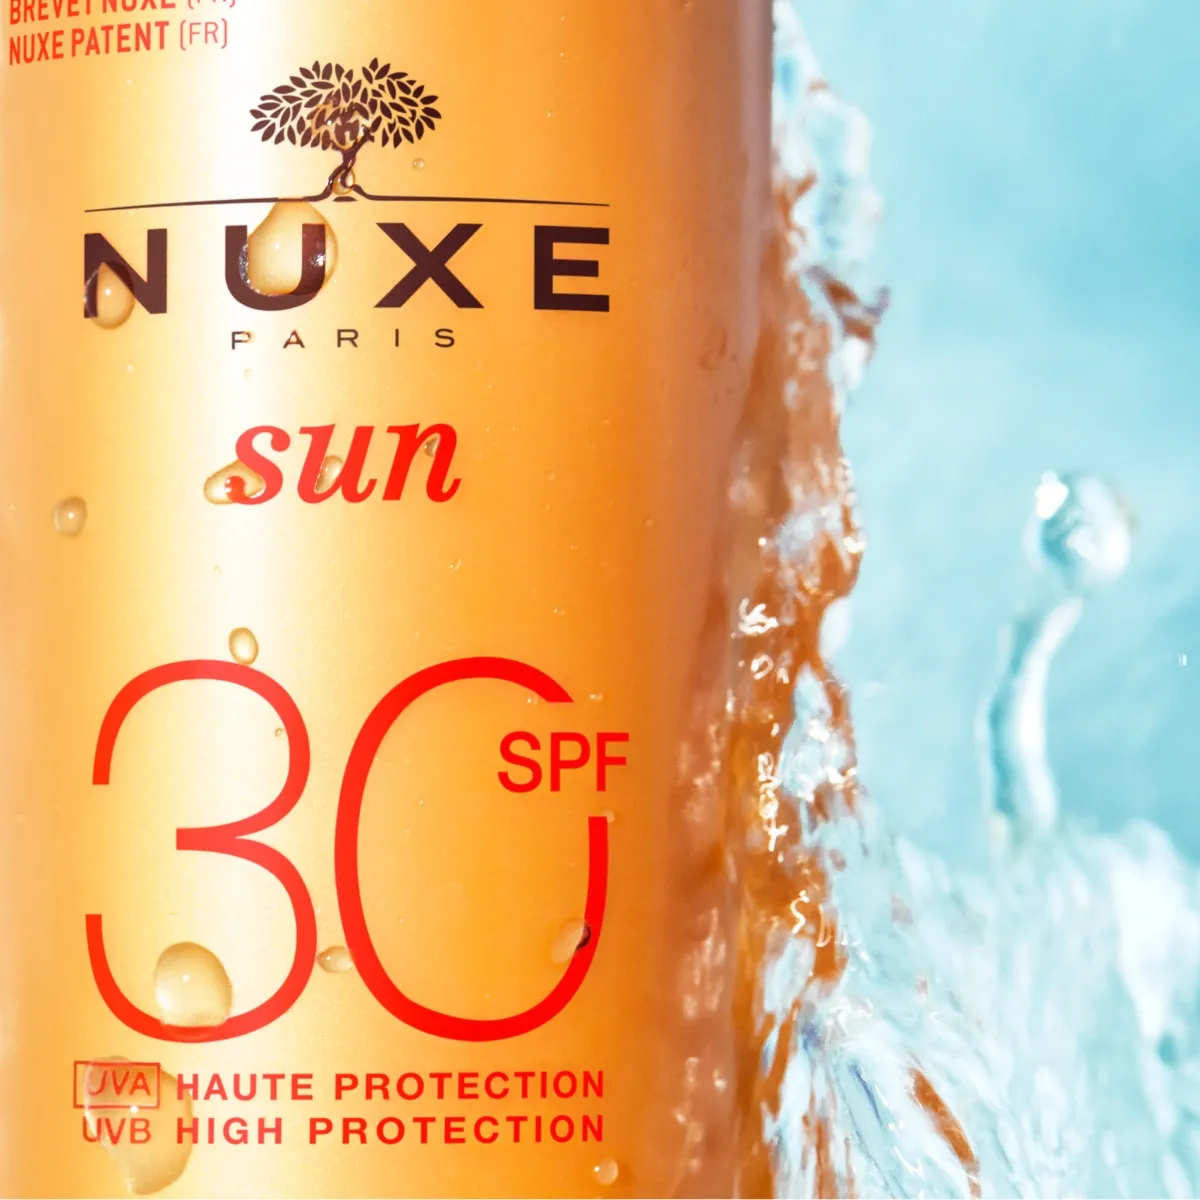 Nuxe Sun mleczko do opalania twarzy ciała SPF30, 150 ml mleczko do opalania twarzy ciała SPF 30, 150 ml